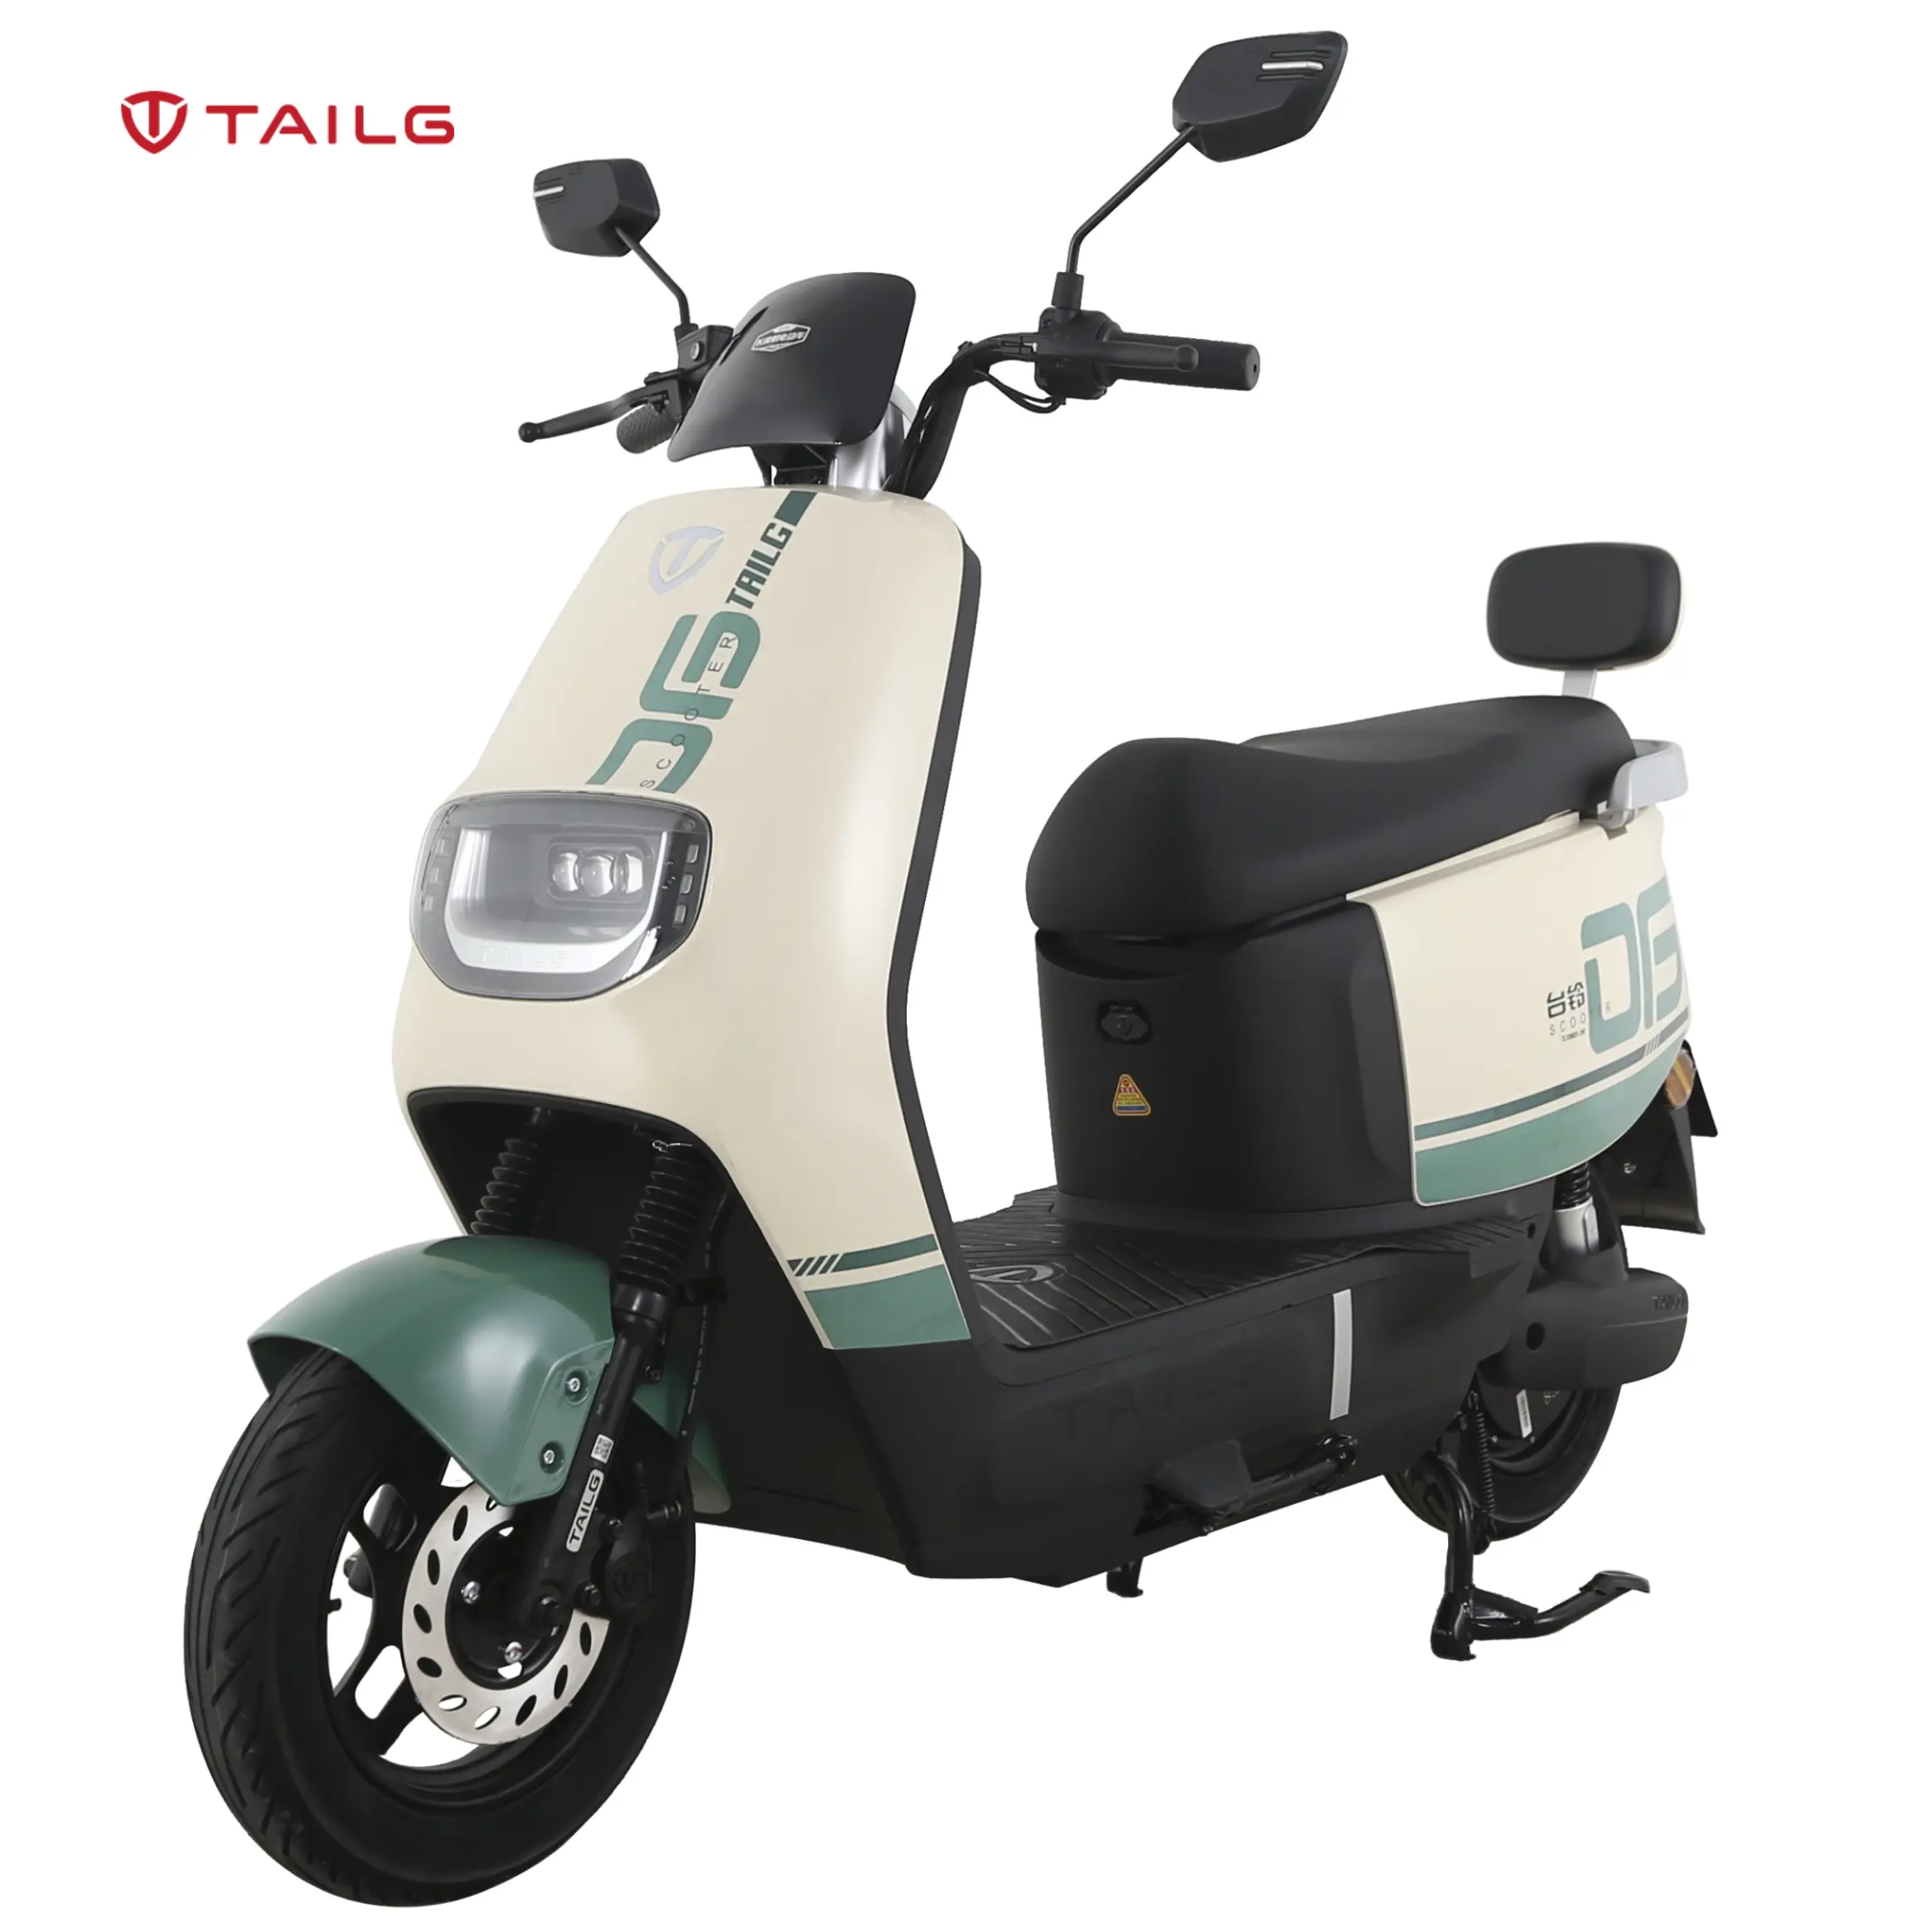 TAILG 최고 판매 72V 51 Km/h 23AH 납산 250CC 성인 오토바이 E 오토바이 새로운 디자인 저렴한 전기 자전거 오토바이